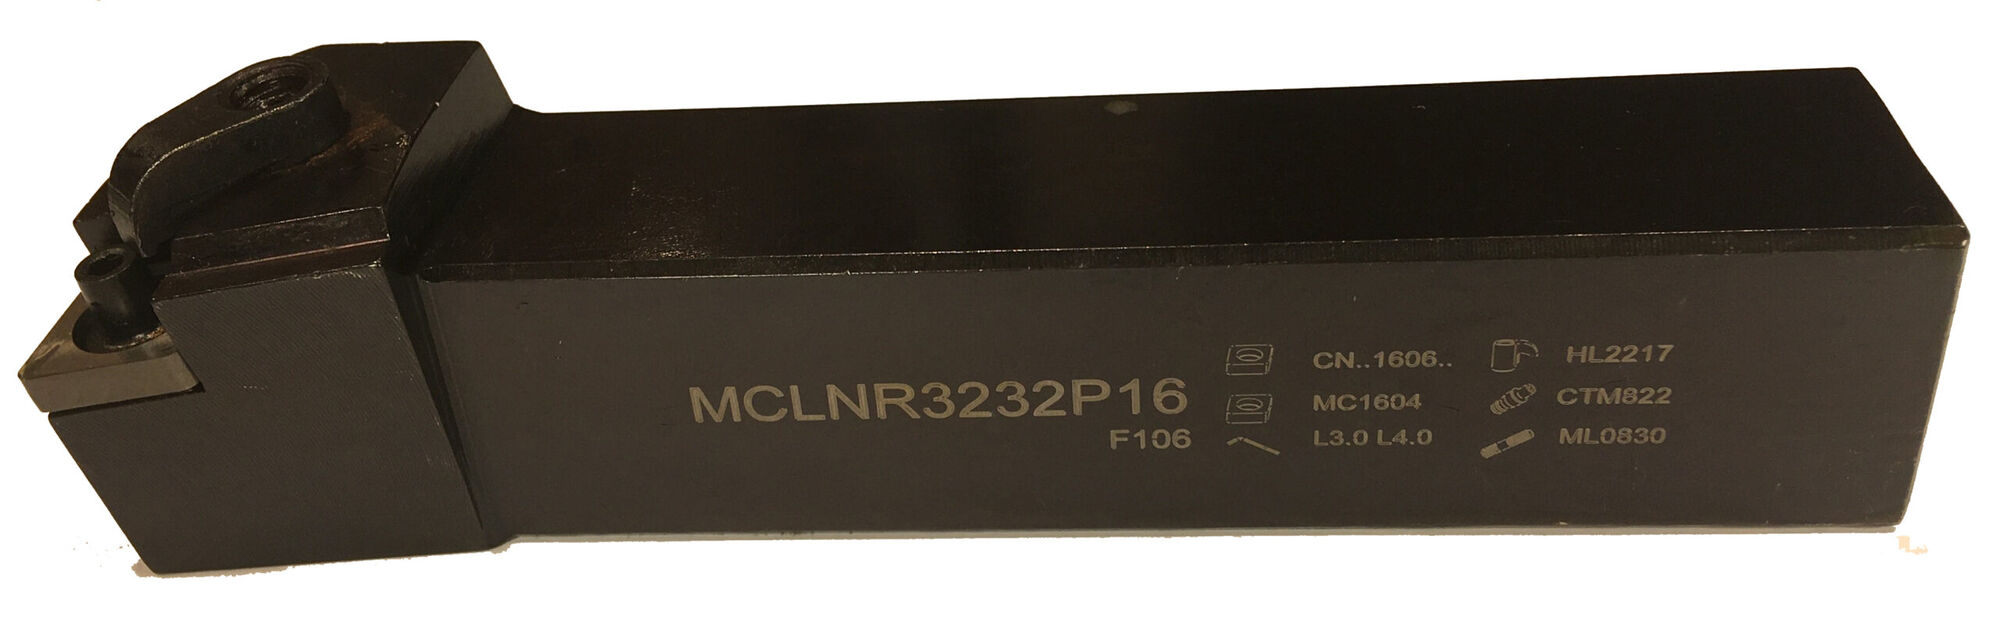 Державка токарная MCLNR3232P16